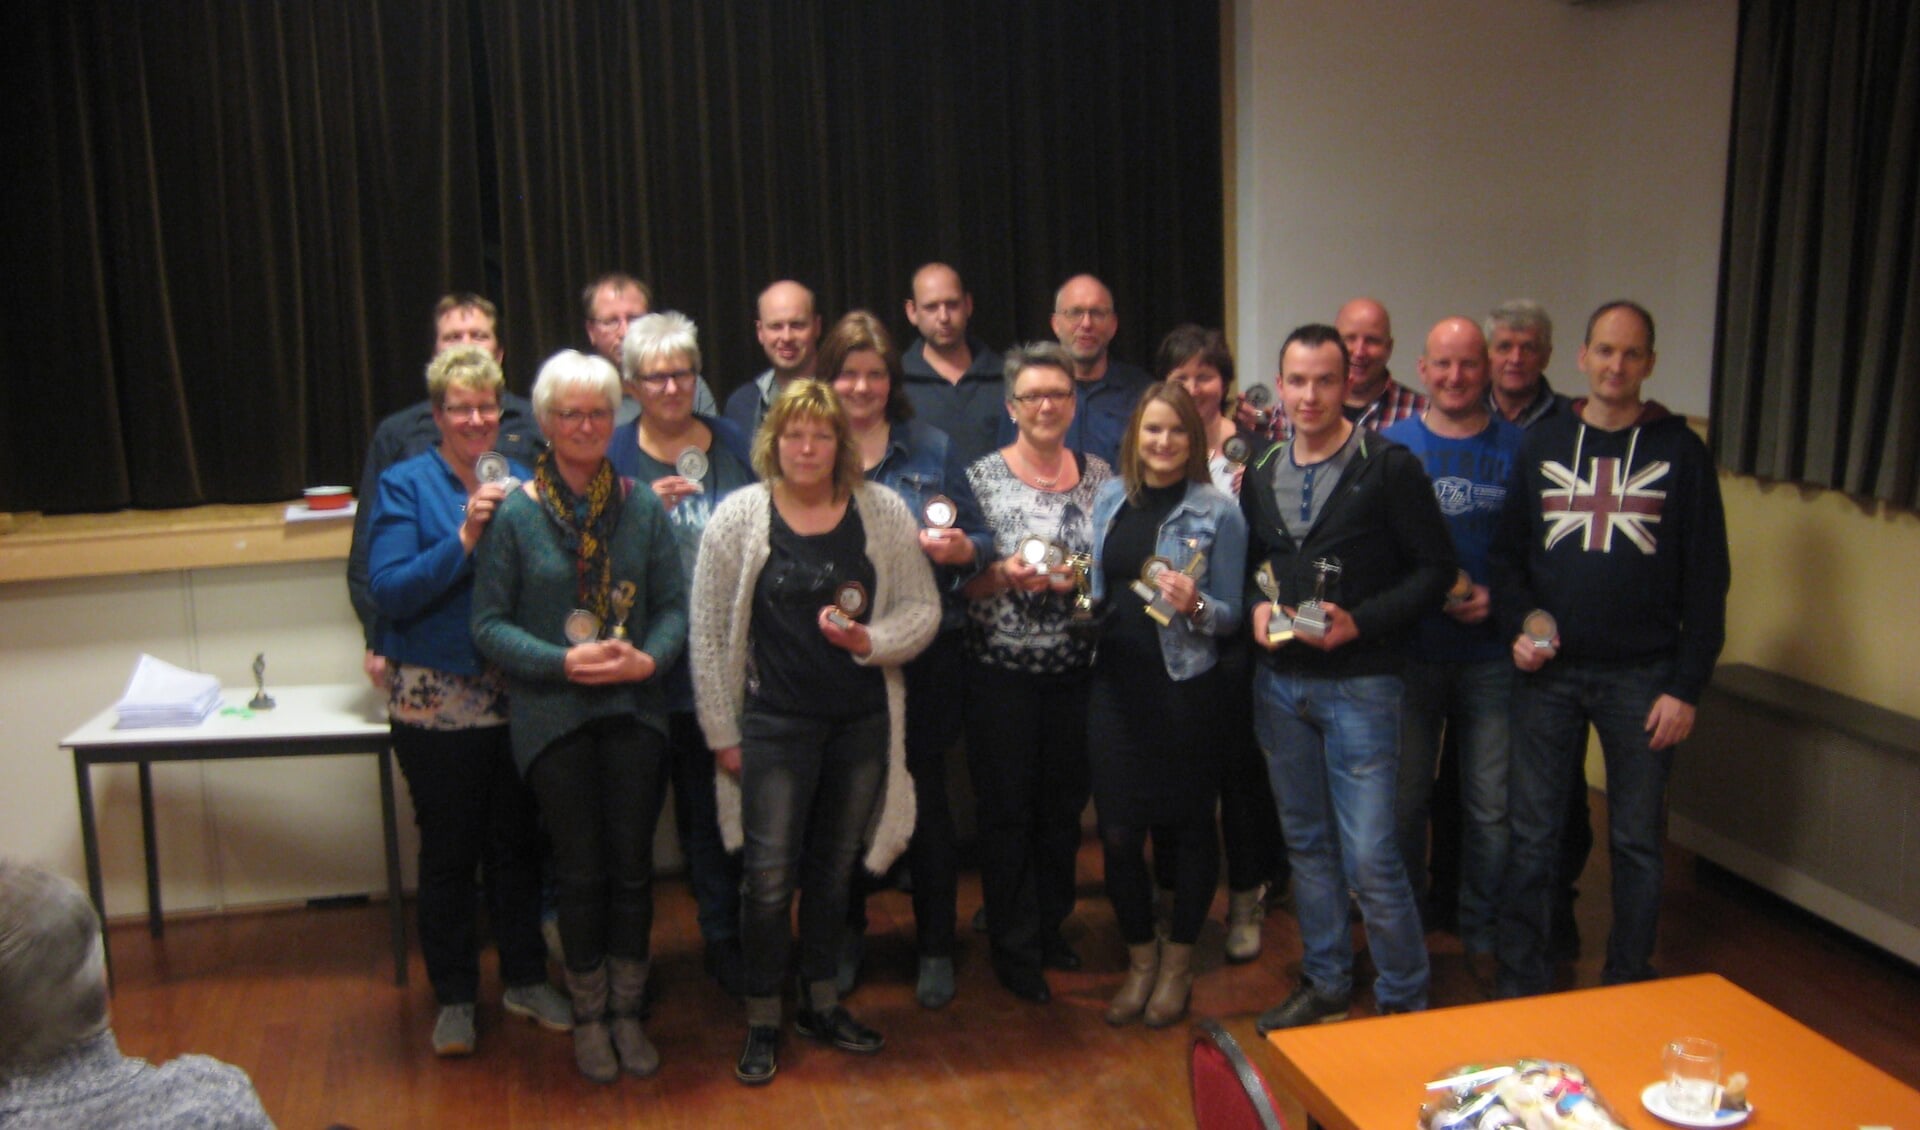 De winnaars van het handboogschietioernooi Veldhoek 2017. Foto: PR. 